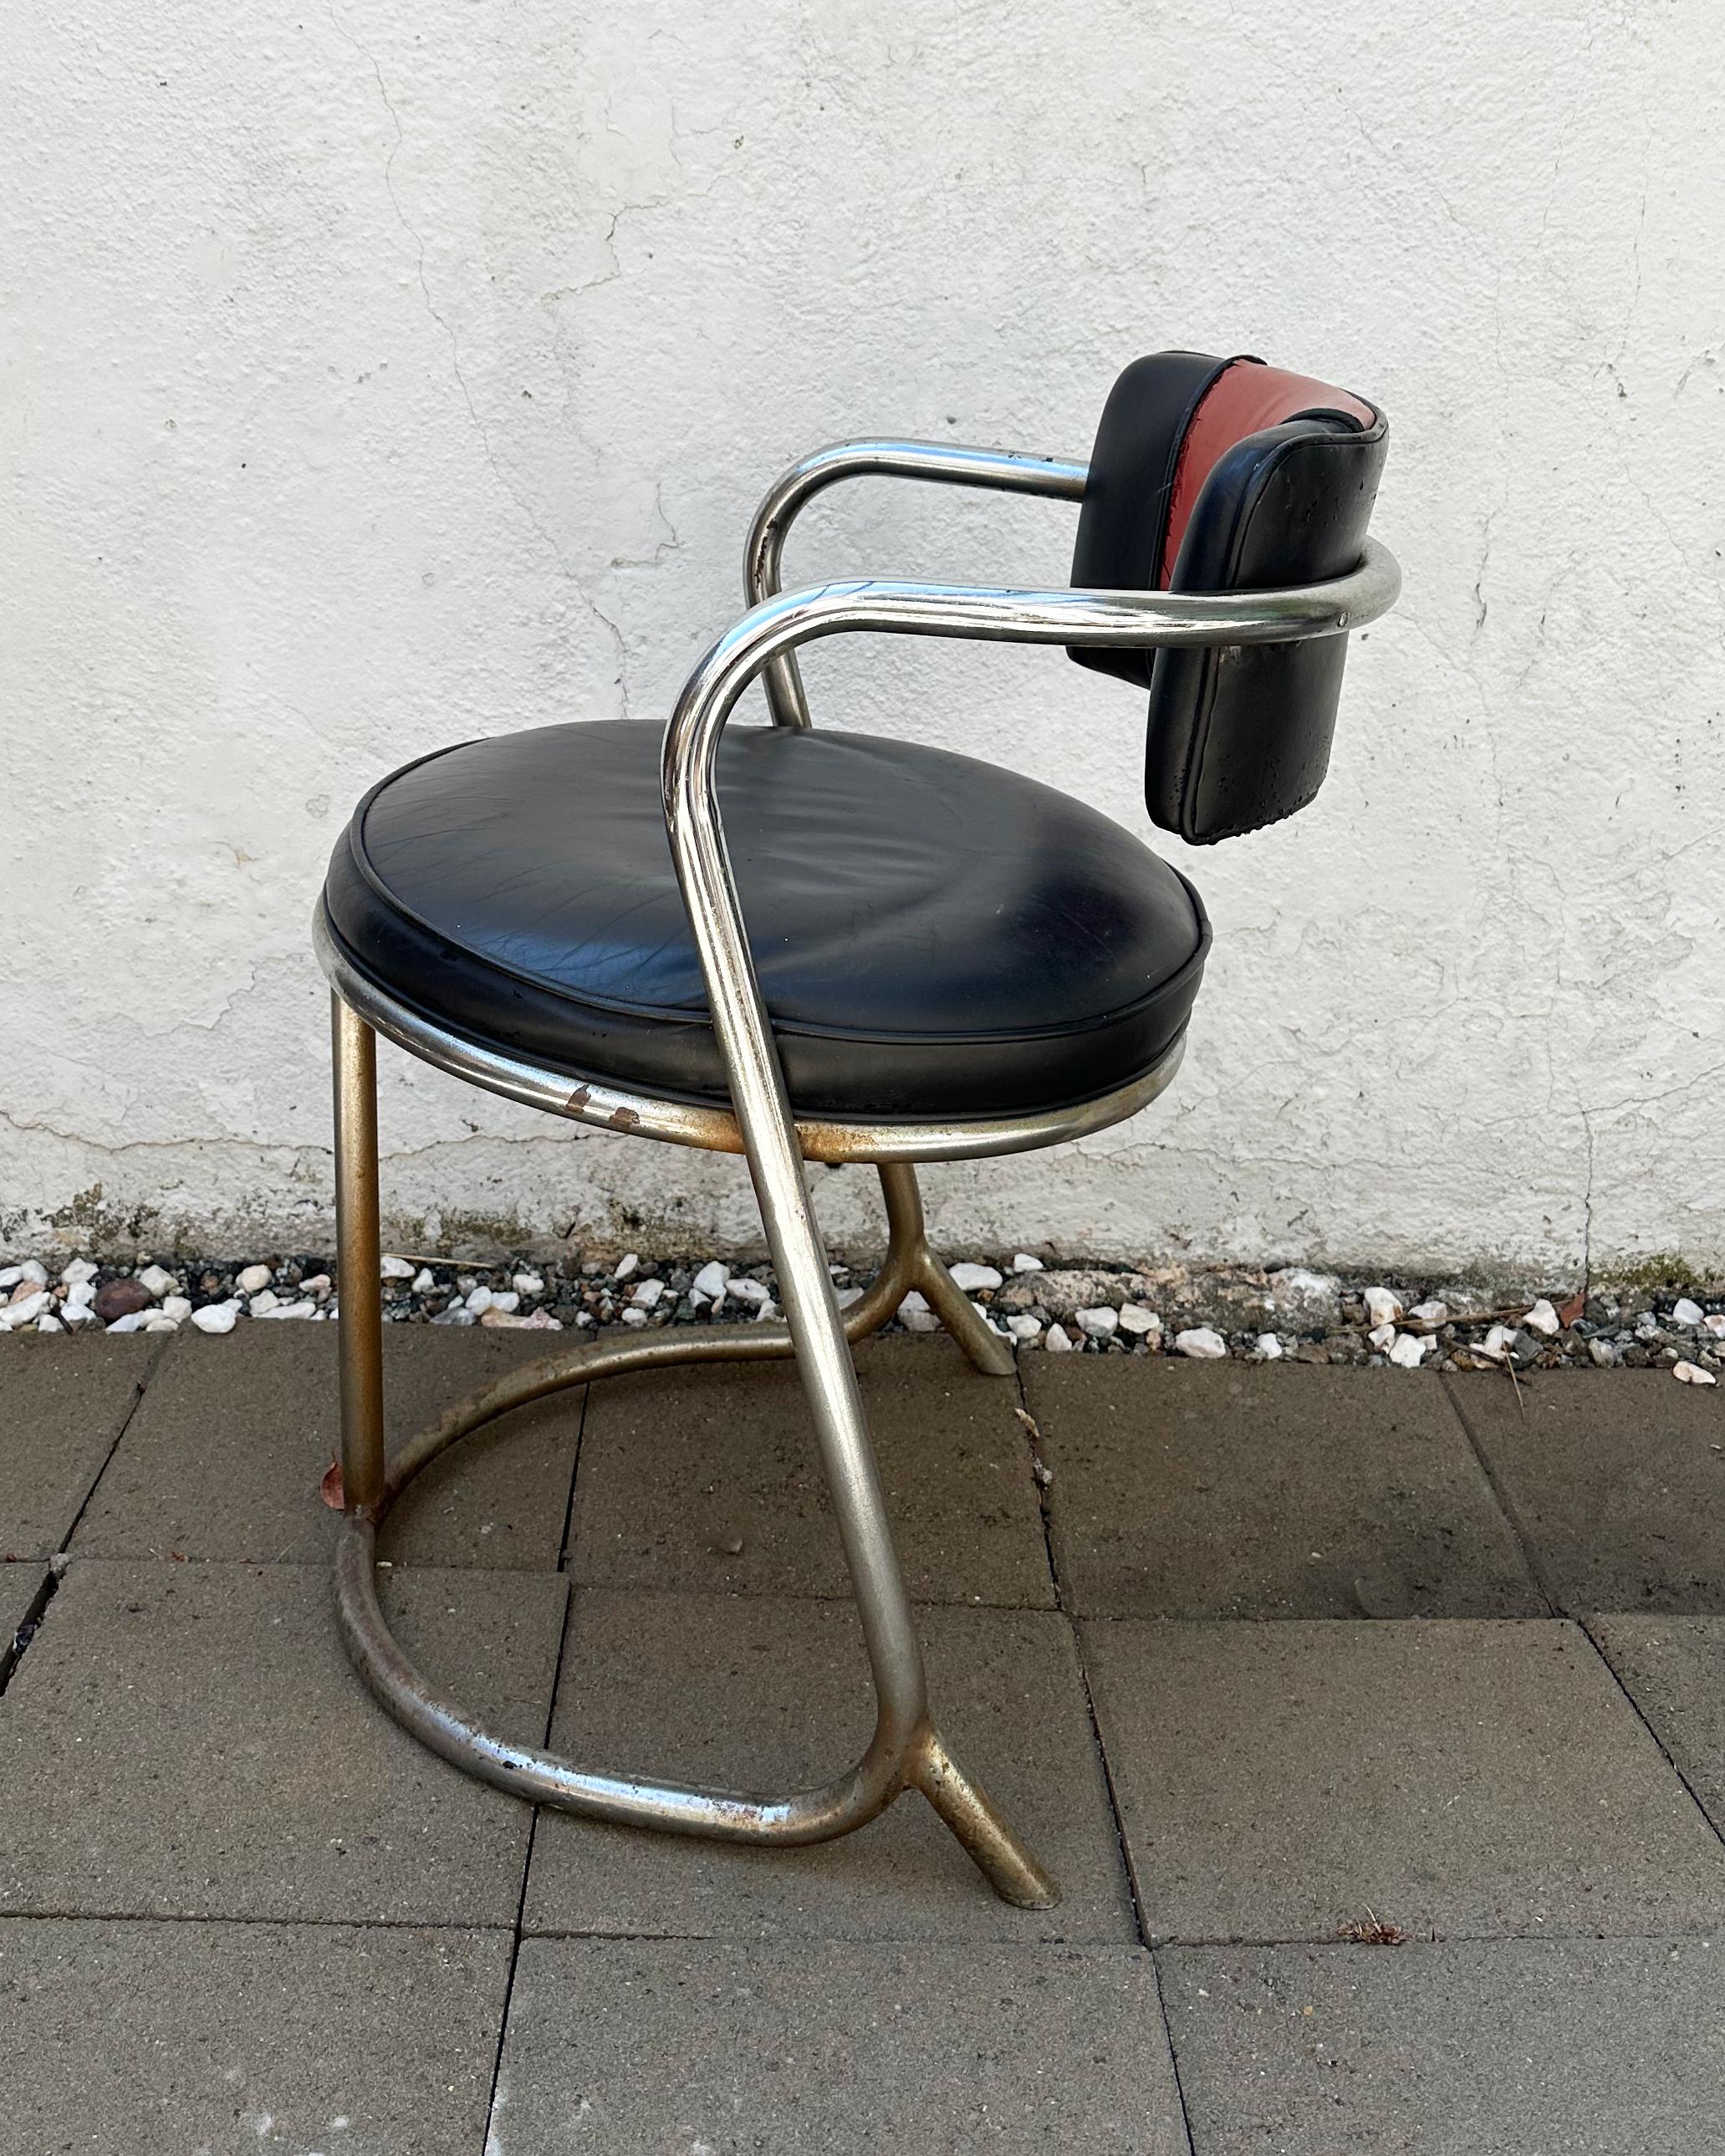 Remontez le temps avec cette exceptionnelle paire de chaises Art déco, témoignage tangible de l'esthétique glamour des années 1970 réimaginée par l'entreprise emblématique, Jazz.

Jazz, un nom très respecté qui a trouvé sa place dans le cœur battant